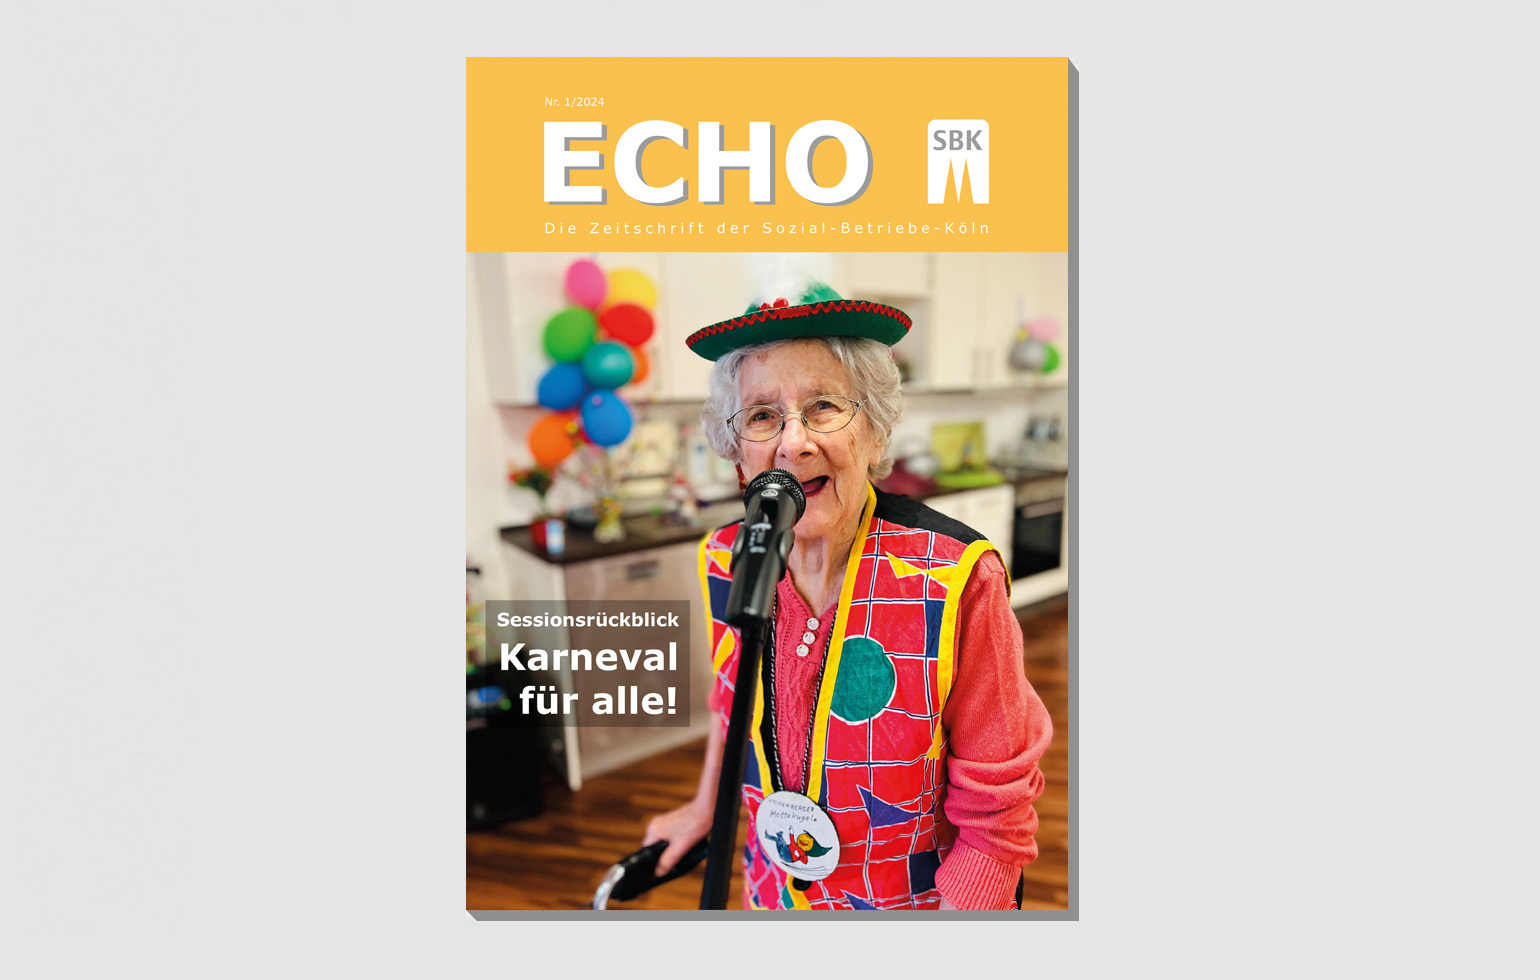 Das Echo-Titelbild zeigt eine kostümierte Seniorin an einem Mikrofon.